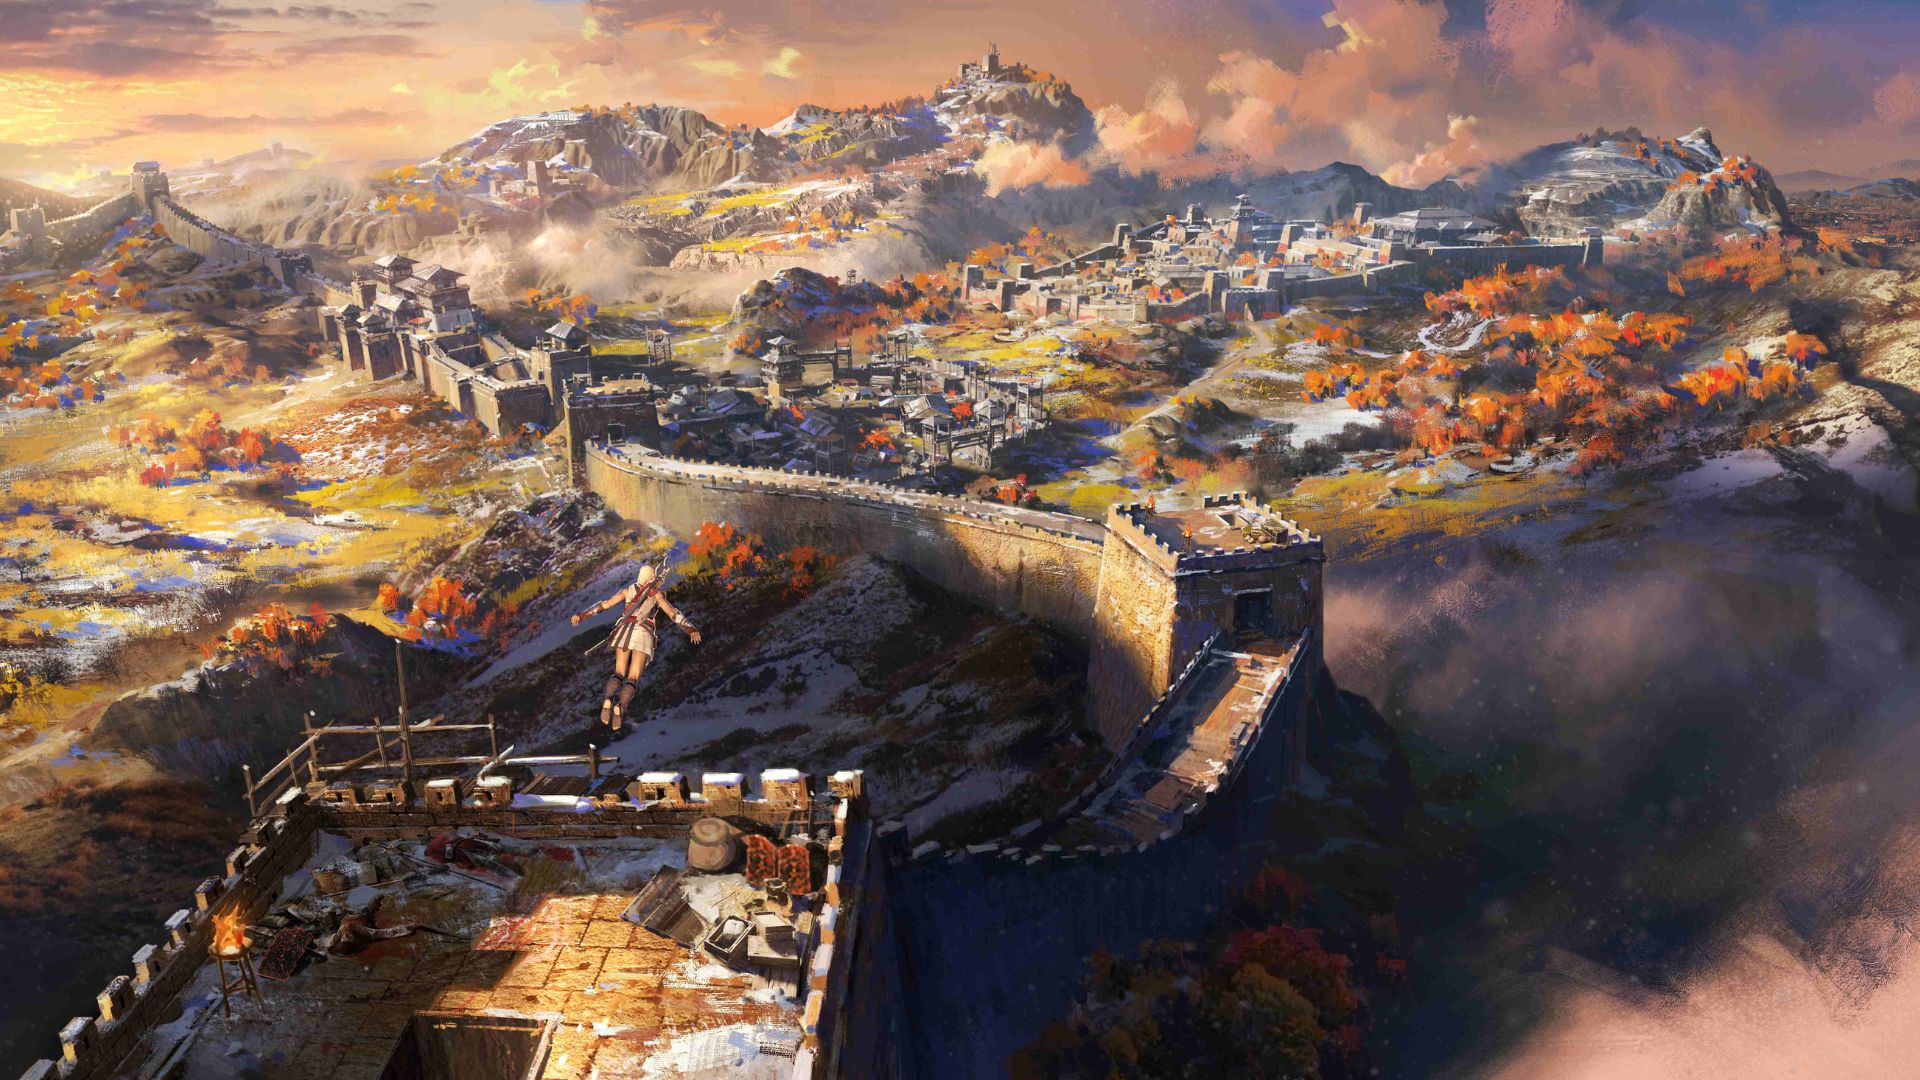  Вид на великую стену в Assassins Creed Codename Jade